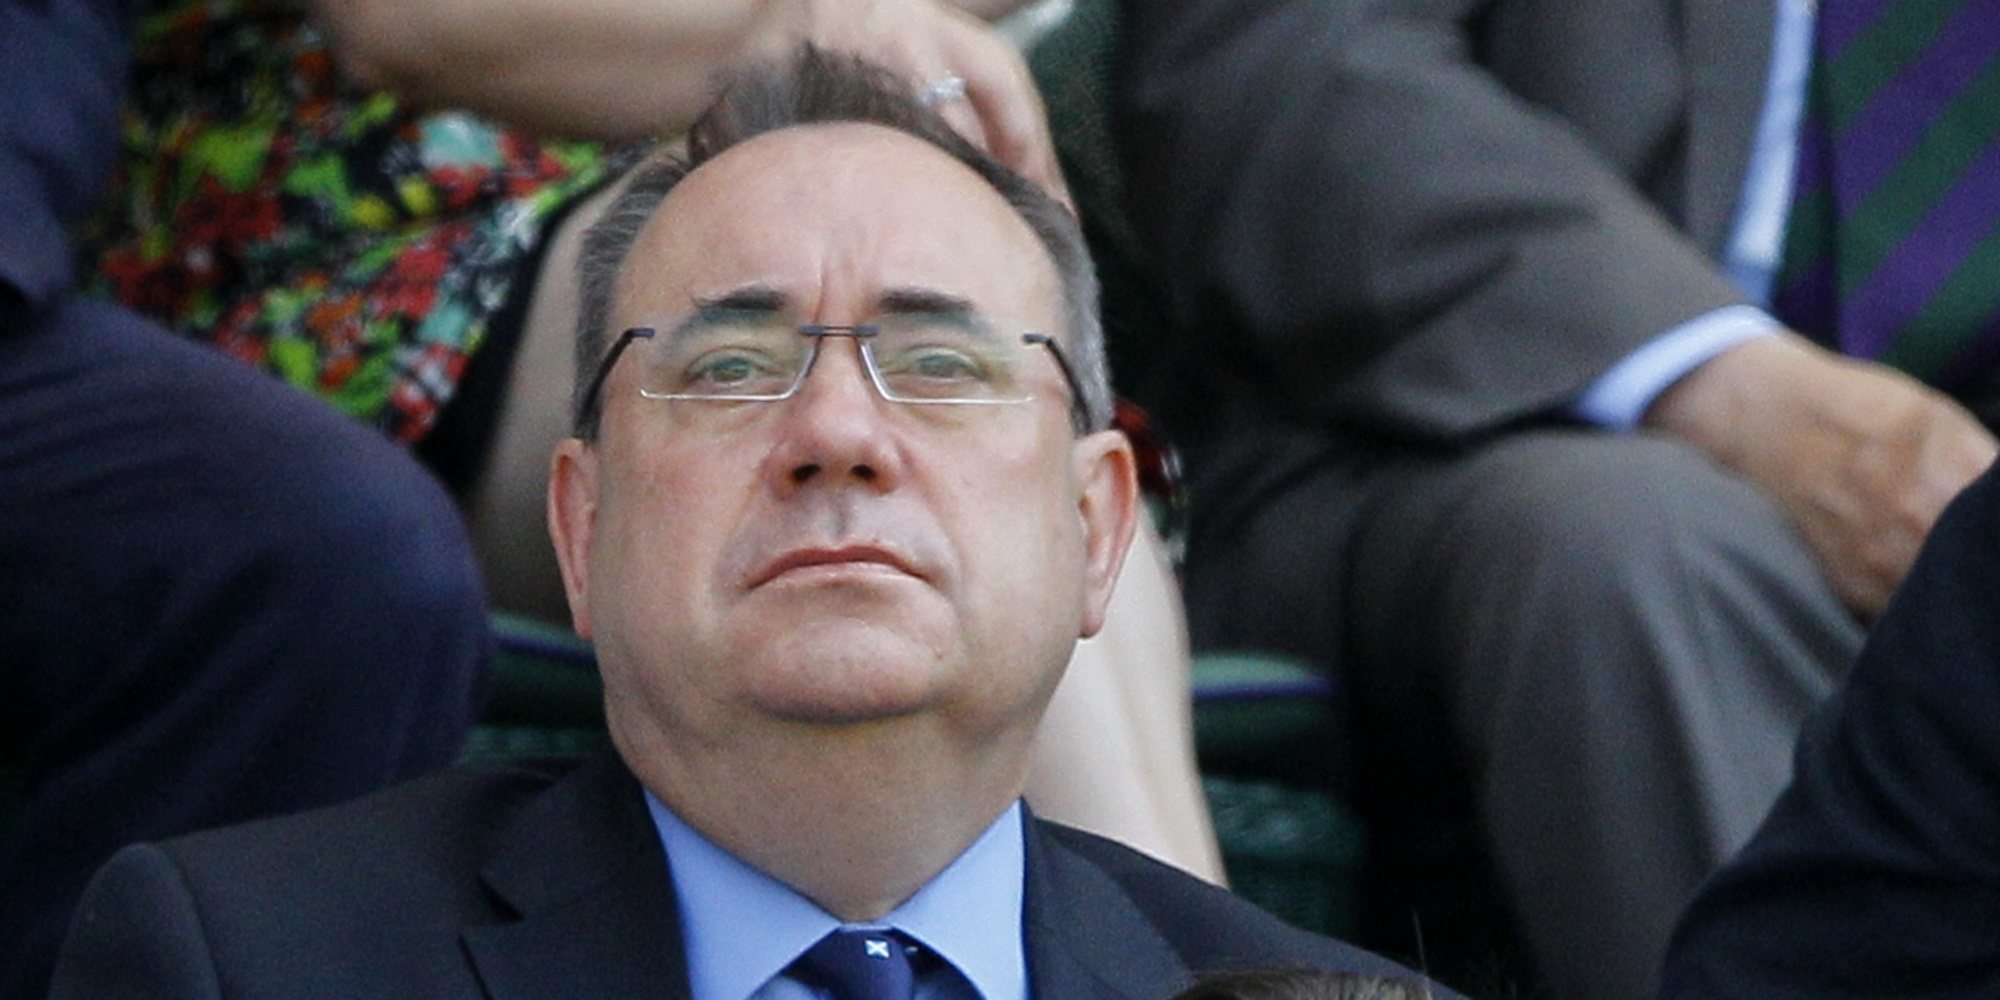 Detenido Alex Salmond, exprimer ministro escocés, por acoso sexual